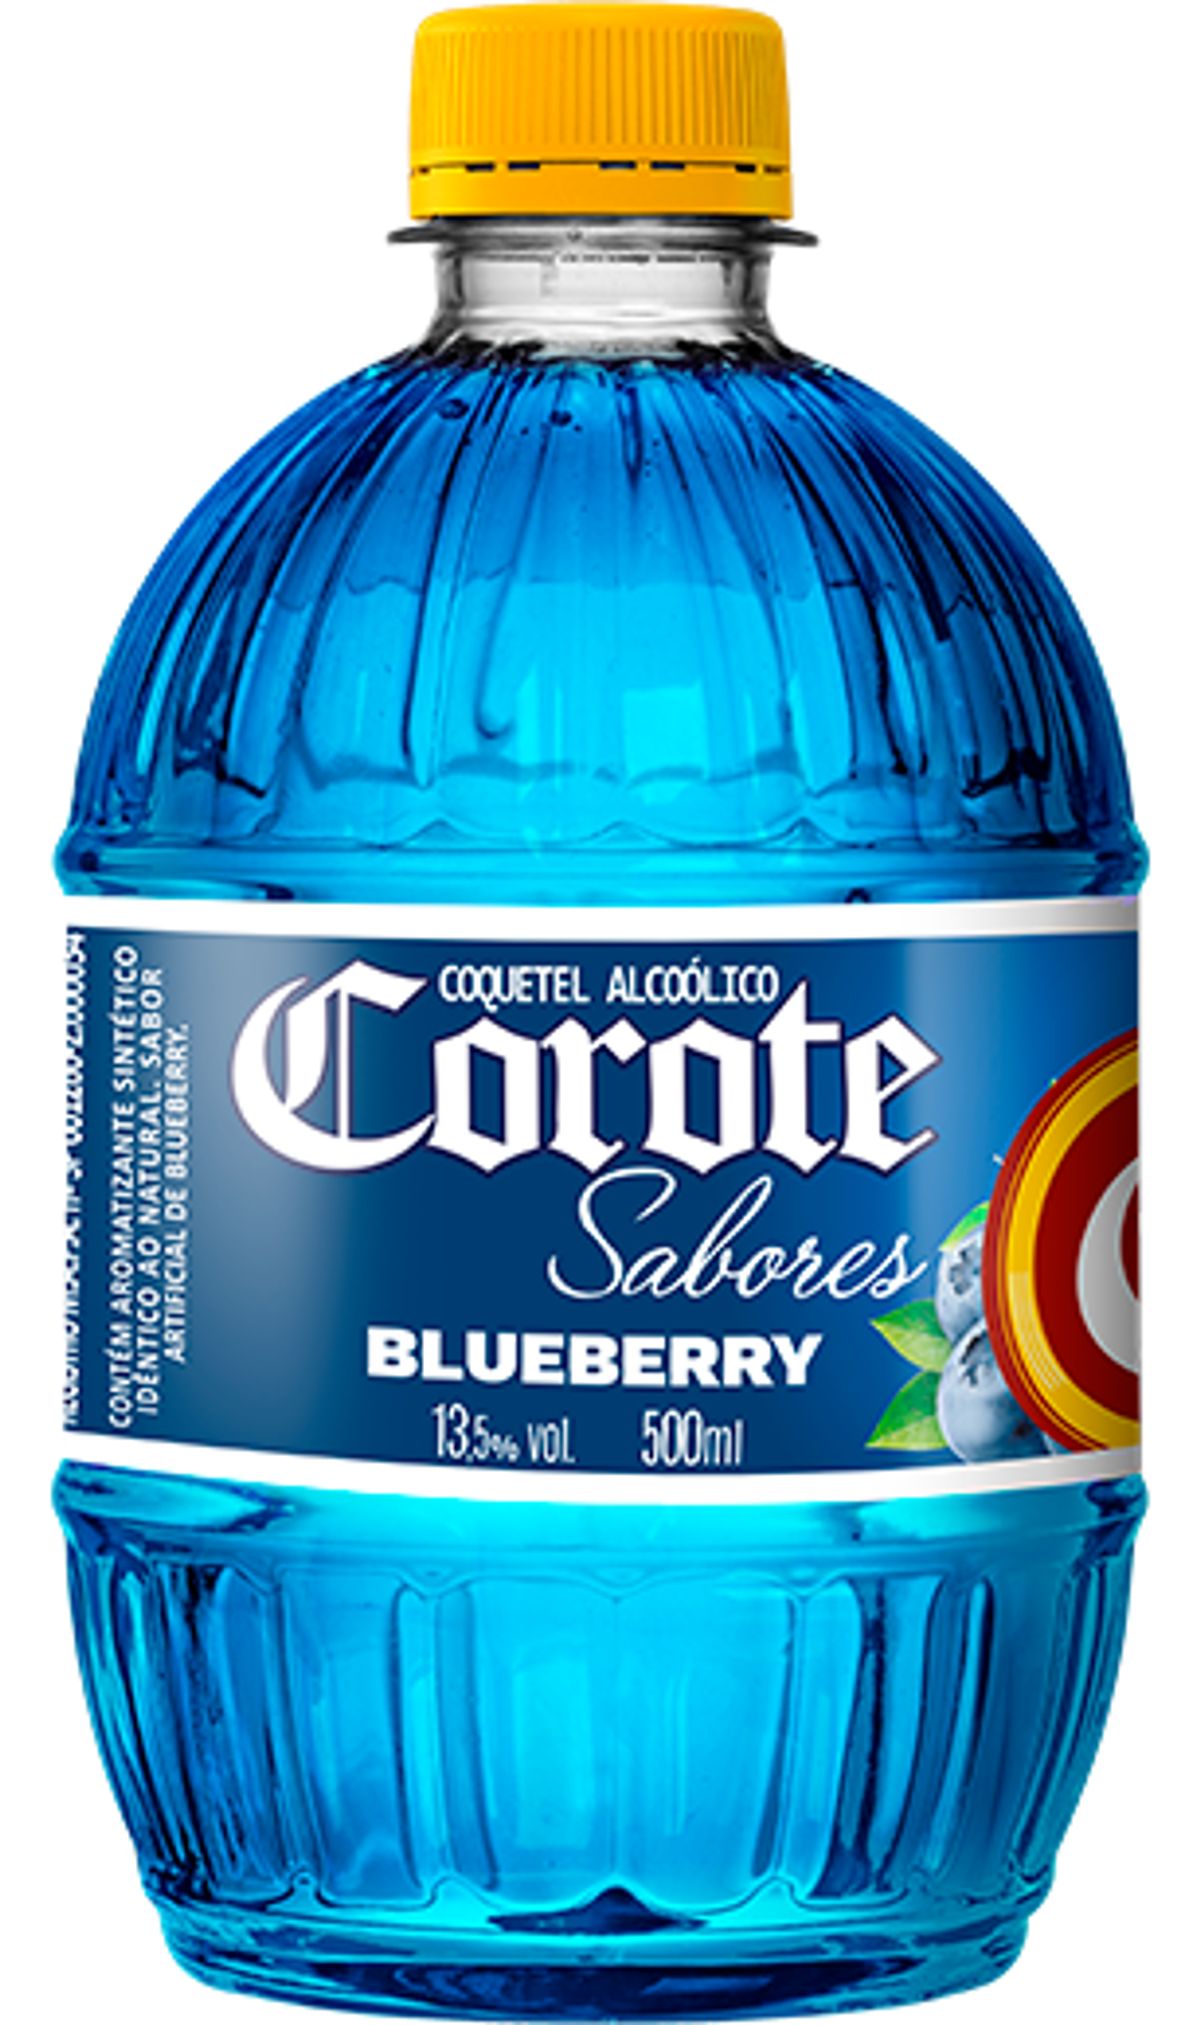 Coquetel Alcoólico Corote Blueberry 500ml